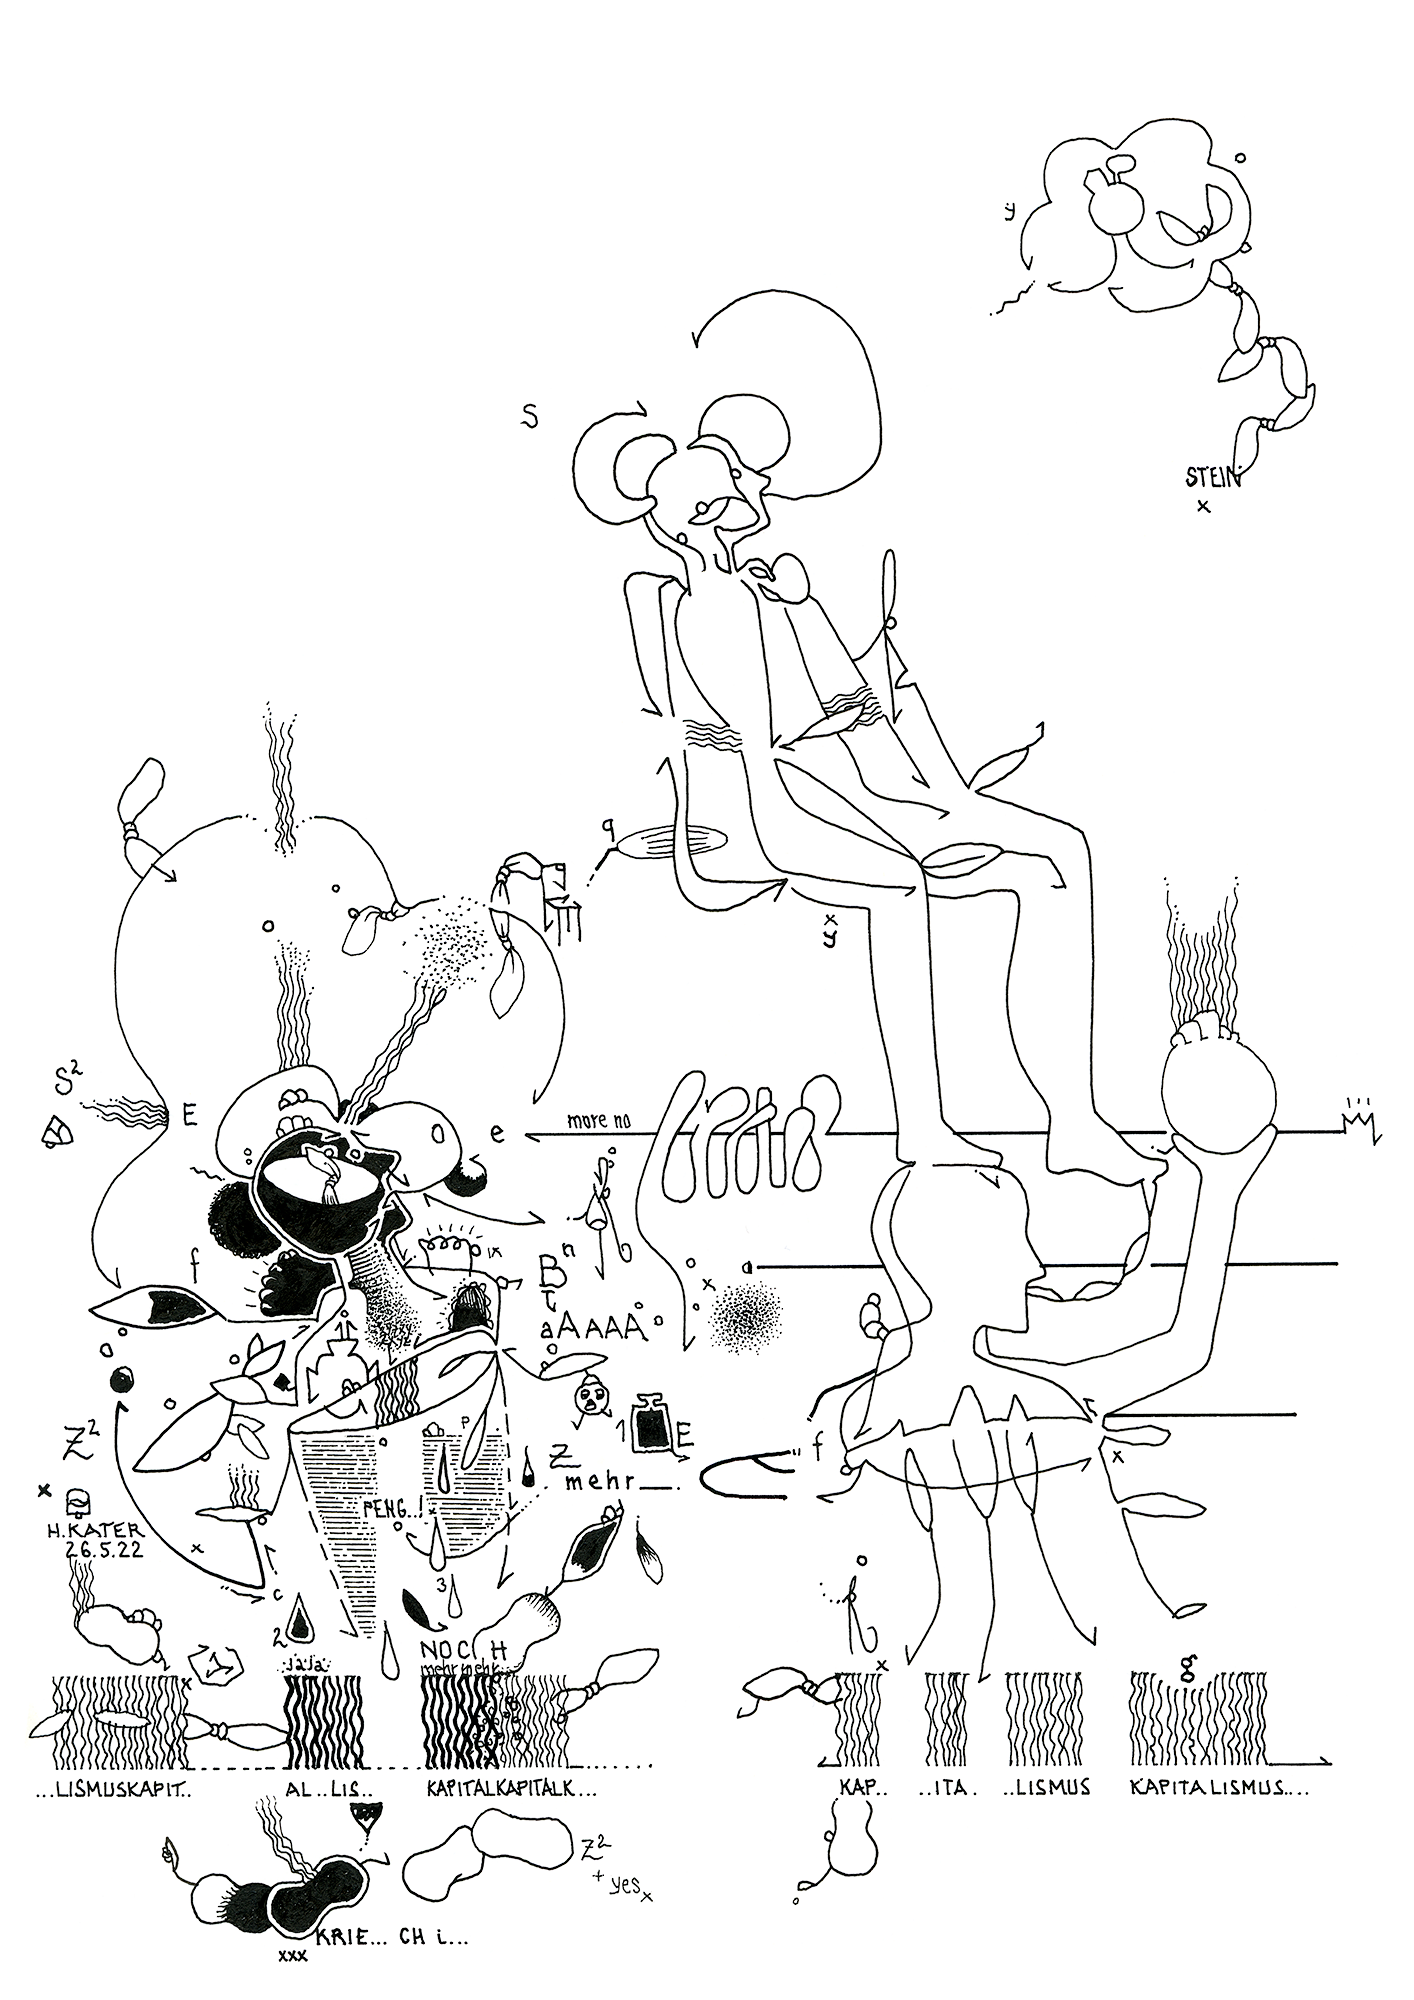 Hannes Kater: Tageszeichnung (Zeichnung/drawing) vom 26.05.2022 (1414 x 2000 Pixel)